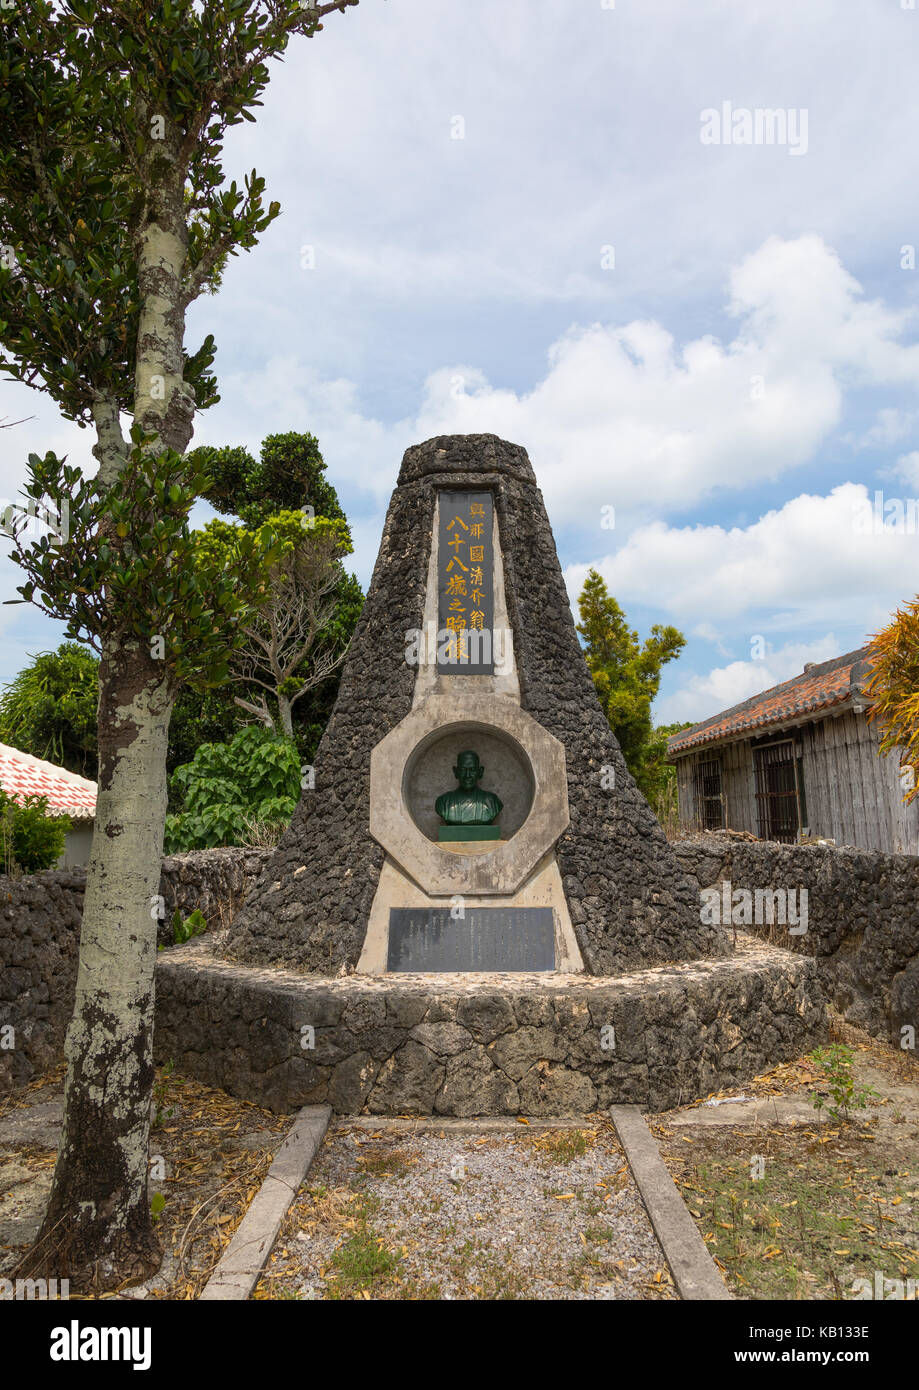 Monumento di pietra nel centro della città, isole yaeyama, Isola di Taketomi, Giappone Foto Stock